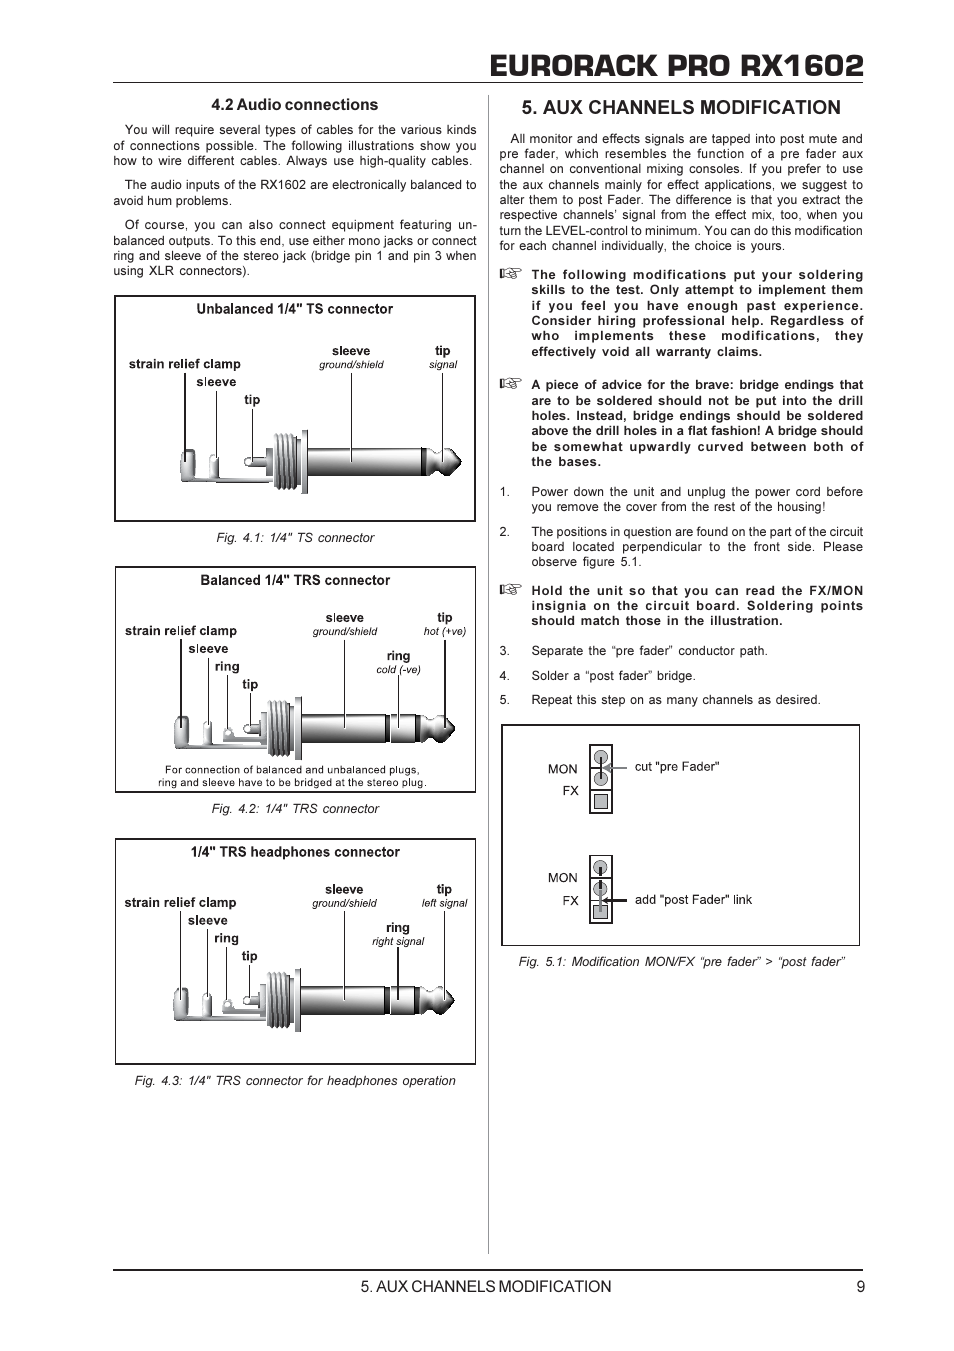 Eurorack pro rx1602, Aux channels modification | Behringer RX1602 User  Manual | Page 9 / 11 | Original mode